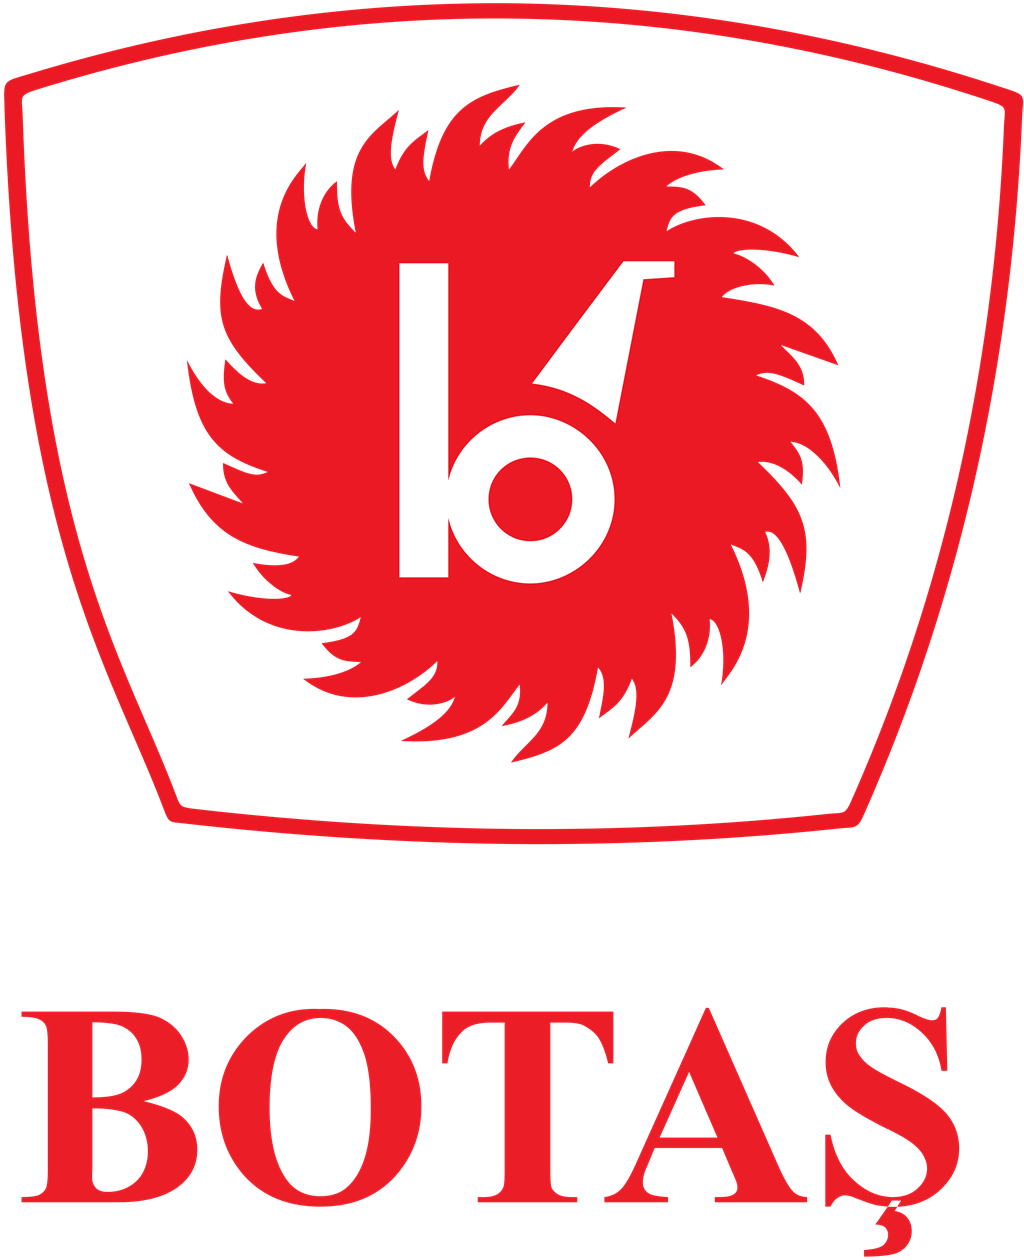 Botas logotype, transparent .png, medium, large